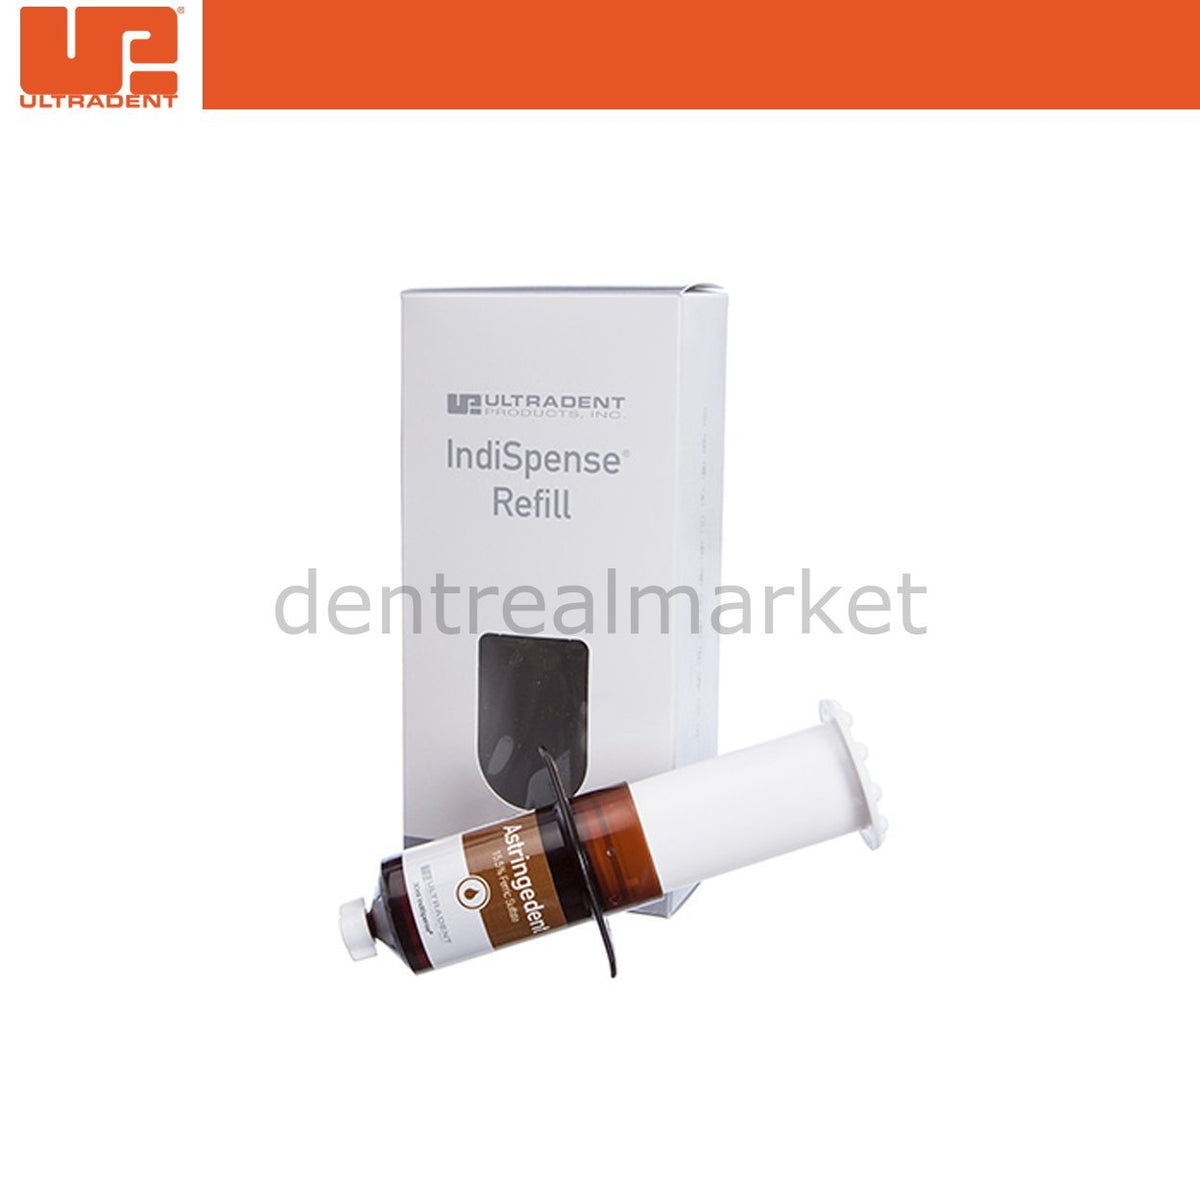 DentrealStore - Ultradent Astringedent 15.5% Ferric Sulphate Solution